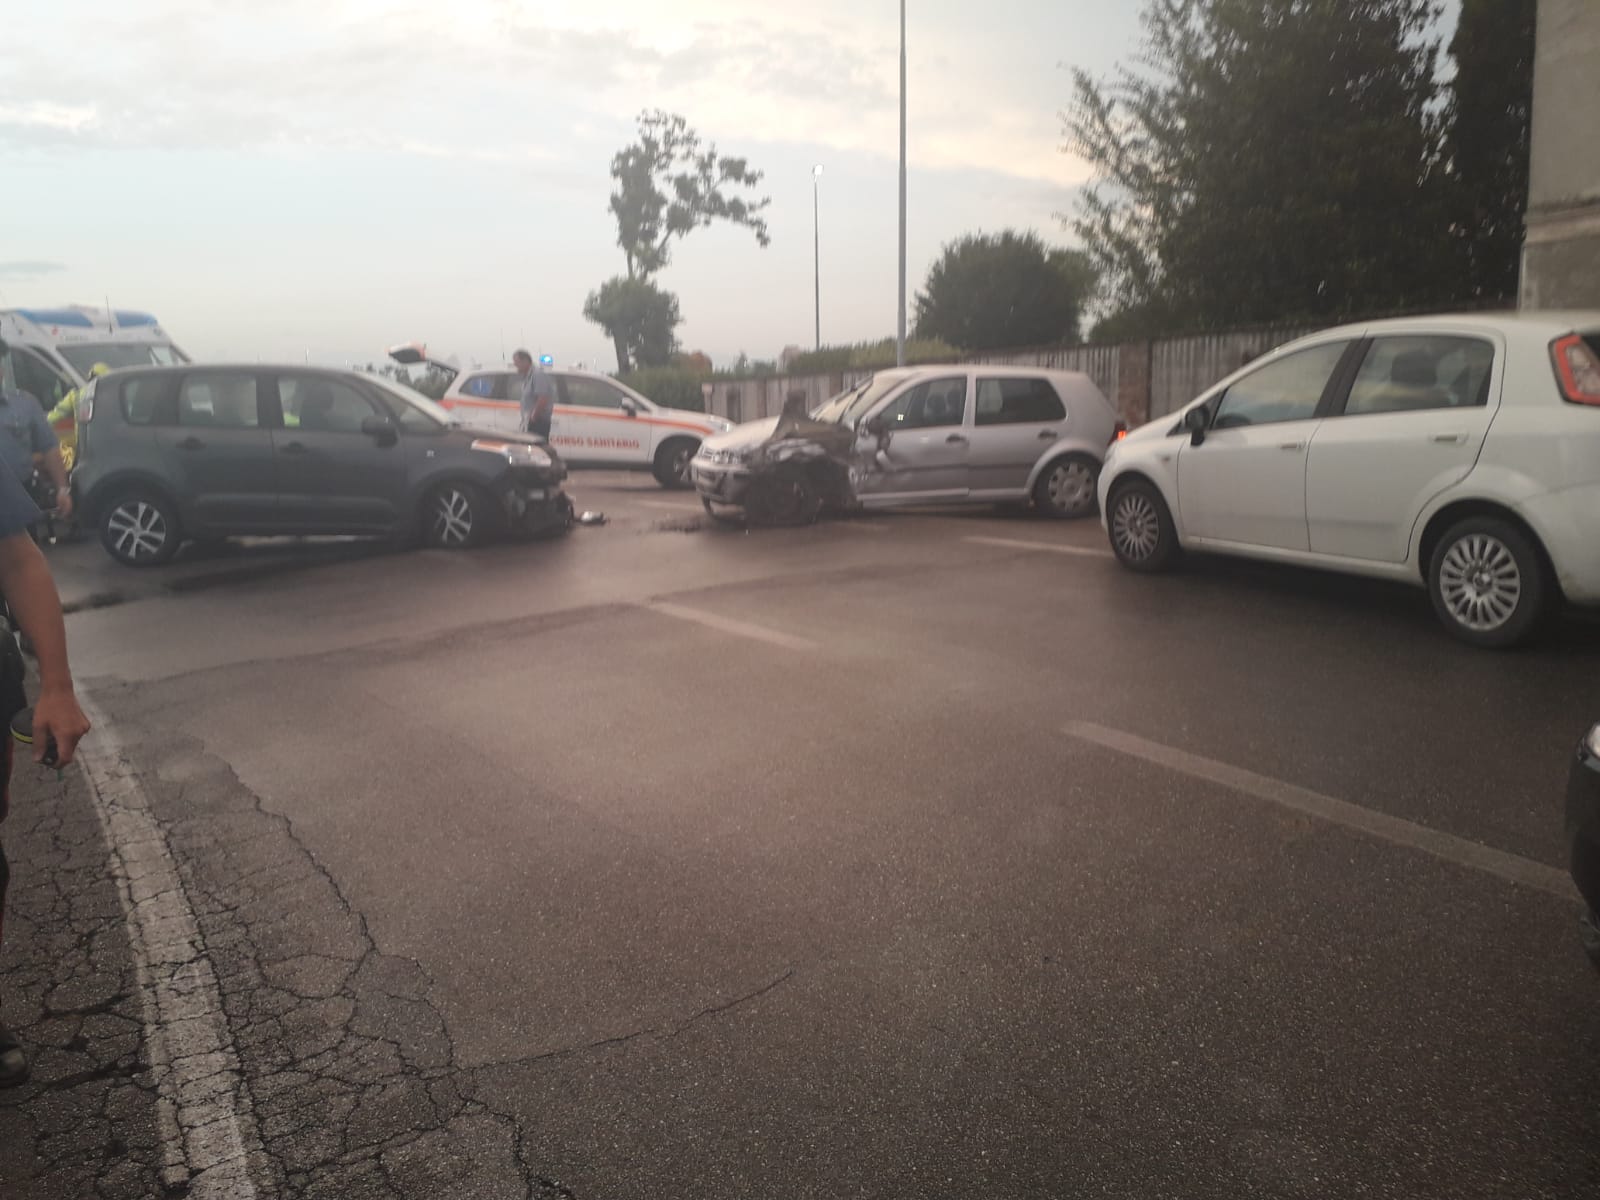 Codice rosso a Orzinuovi: scontro fra auto sulla sp1 - Brescia Settegiorni - Brescia Settegiorni